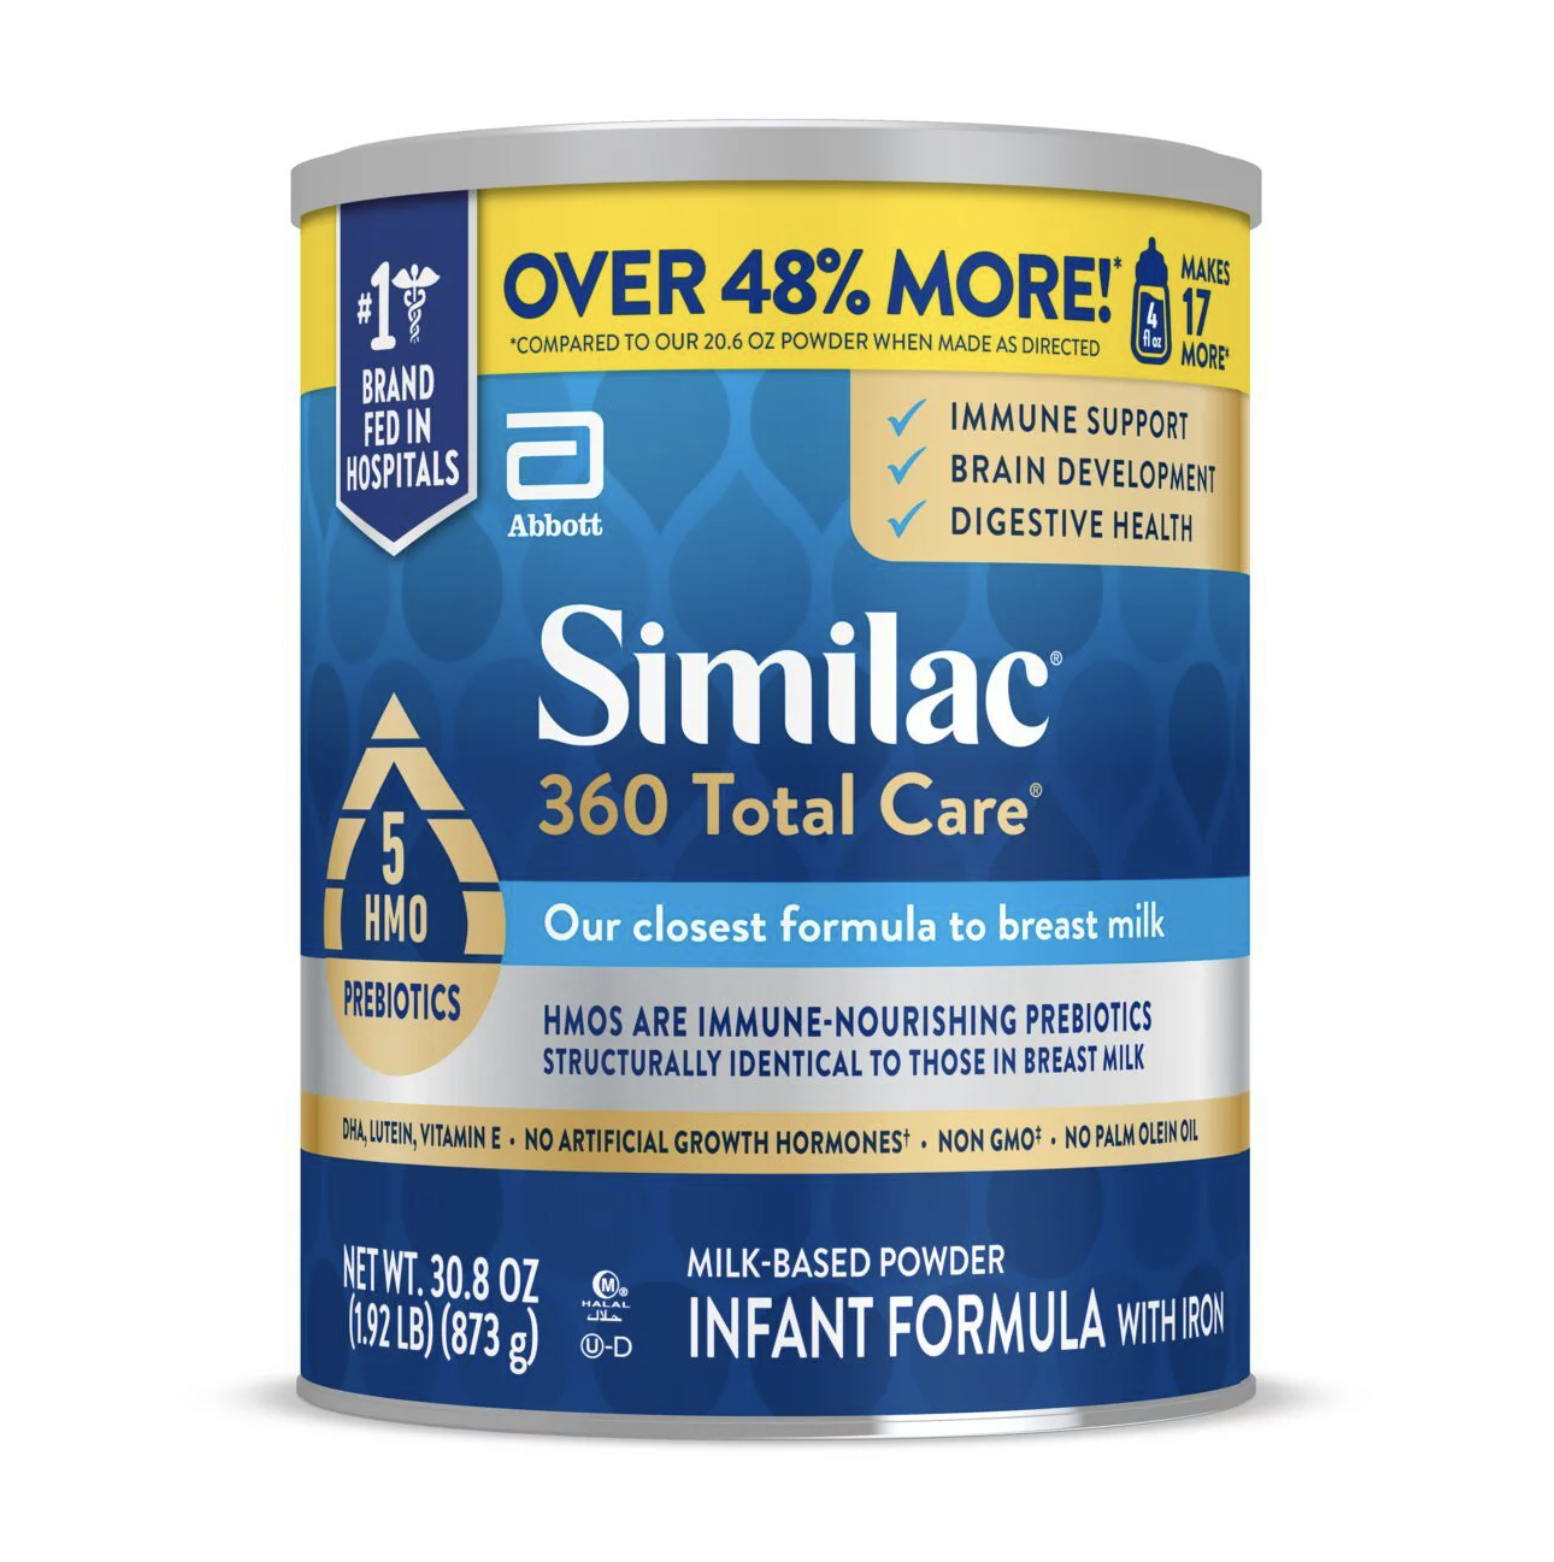 Similac milk-based powder infant formula with iron